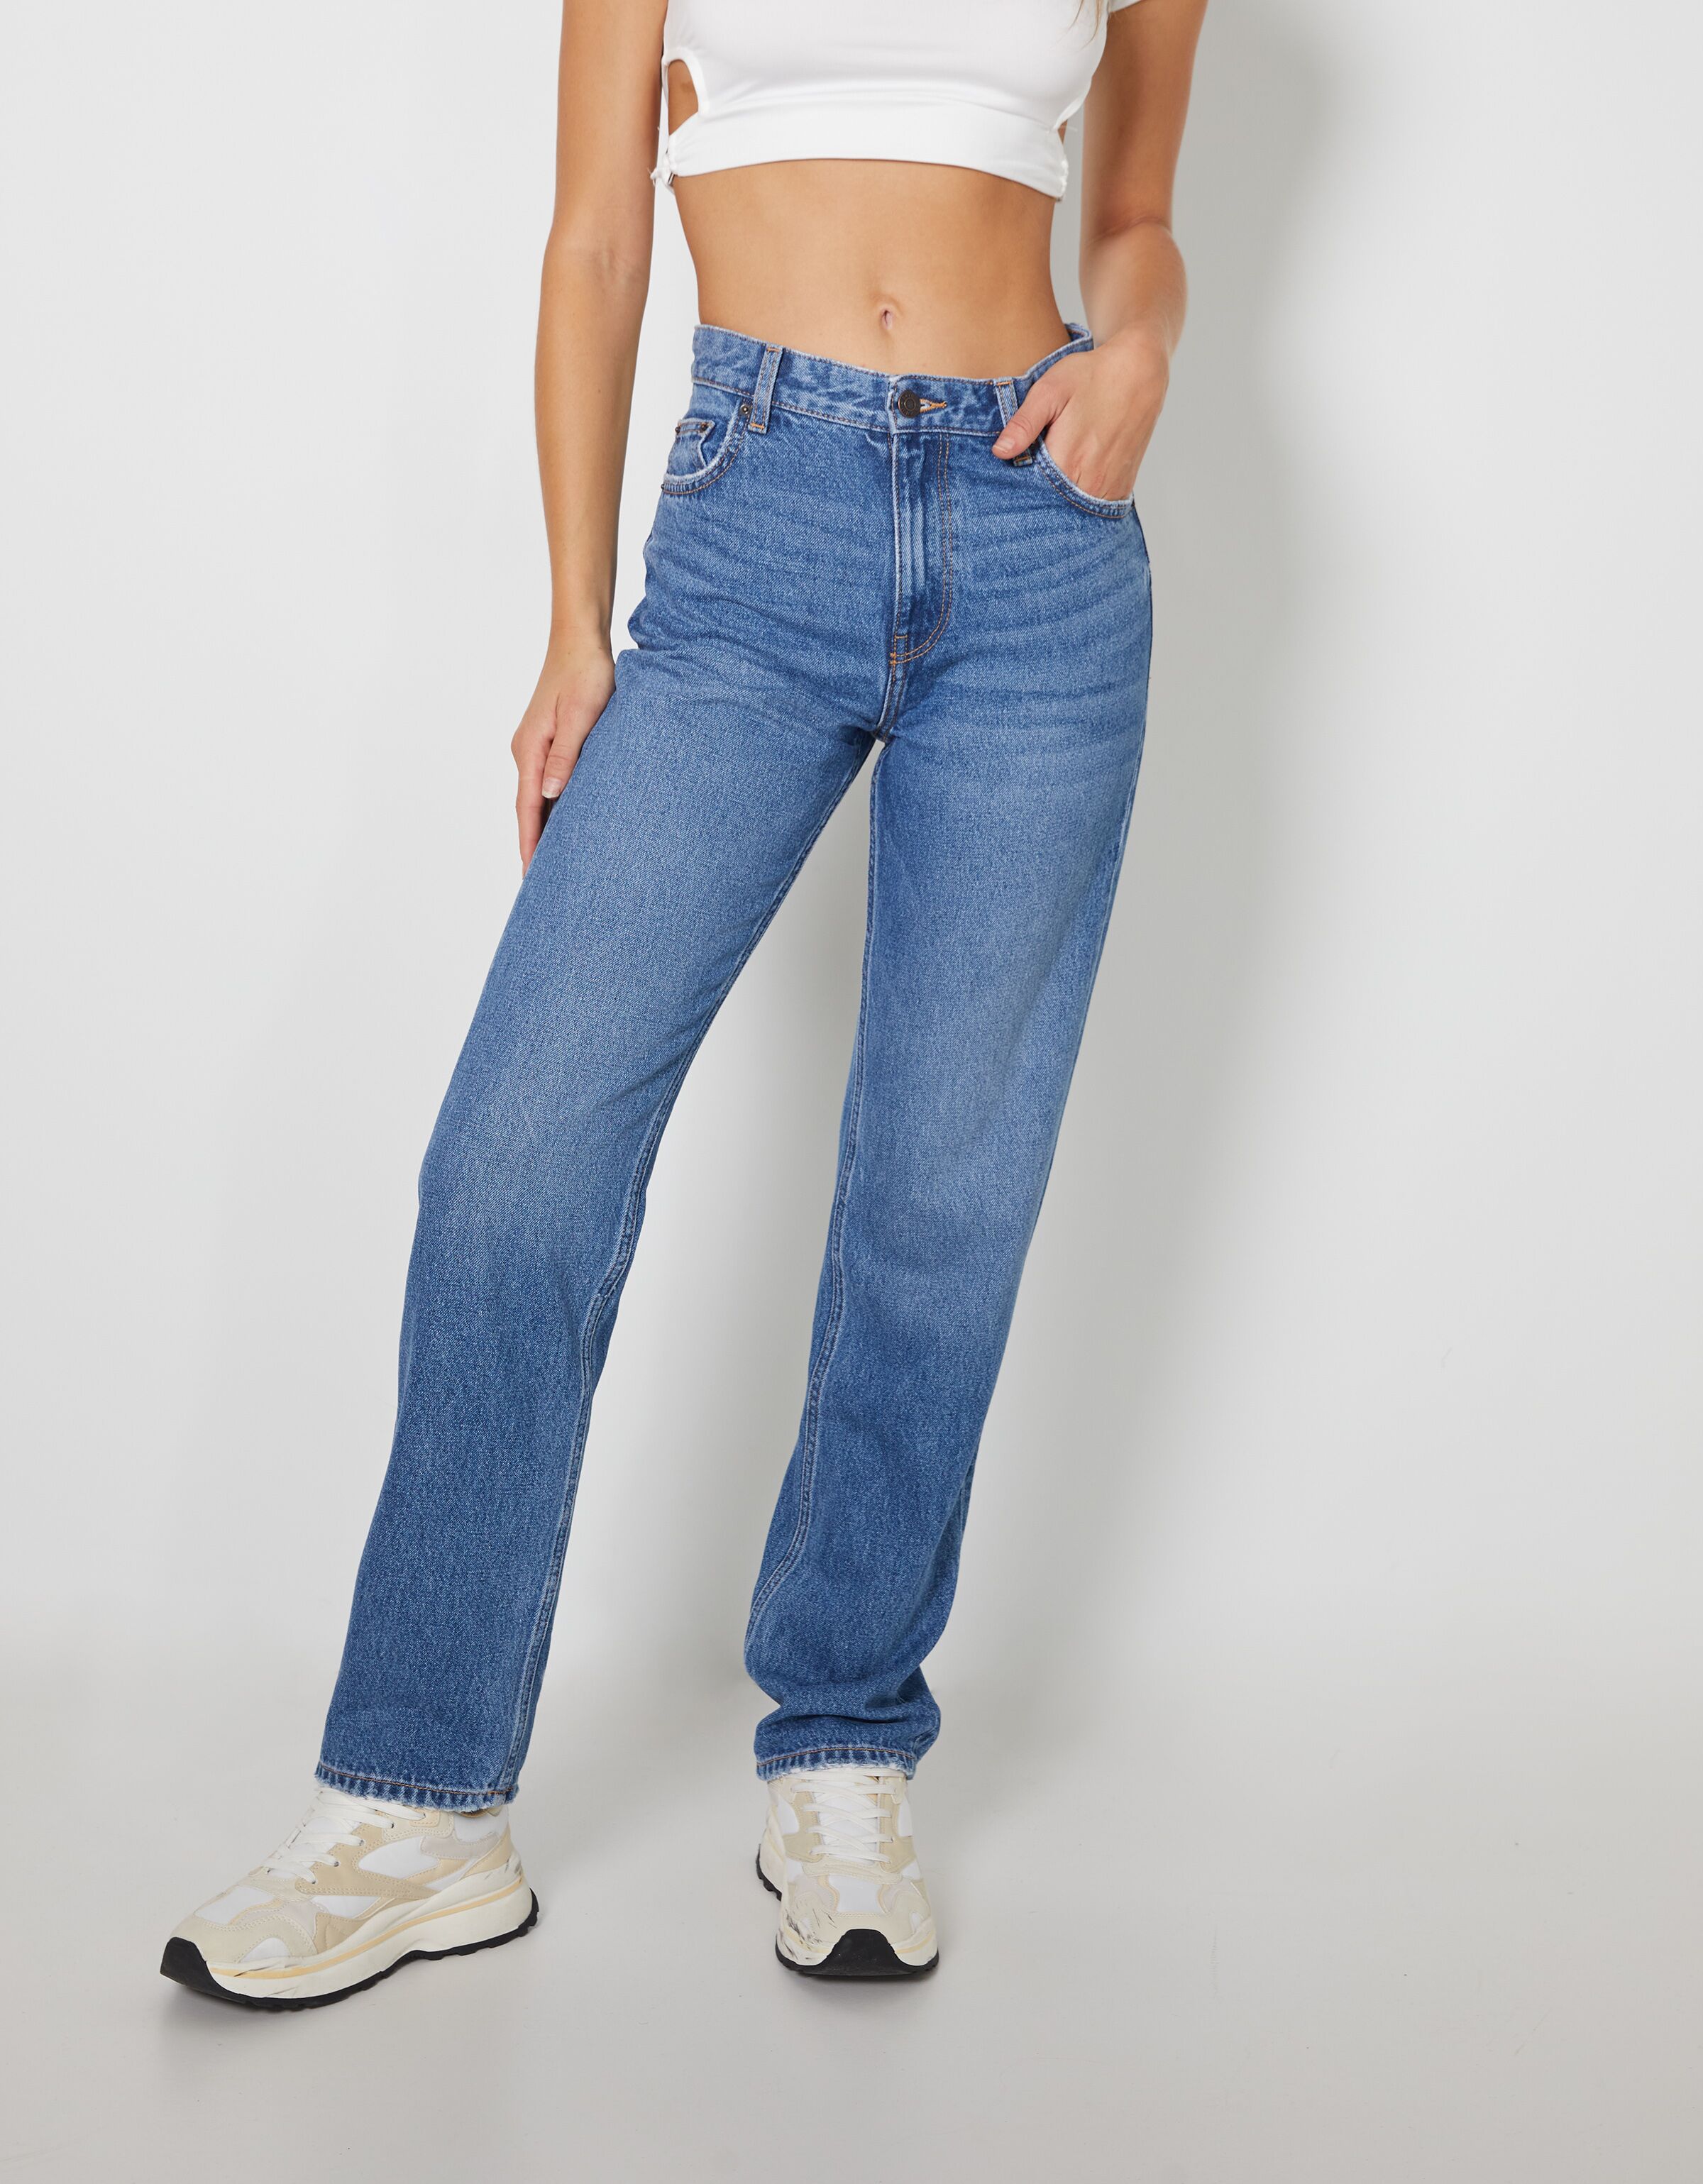 Rabatt 52 % Bershka Straight jeans Blau 34 DAMEN Jeans Straight jeans Ripped 